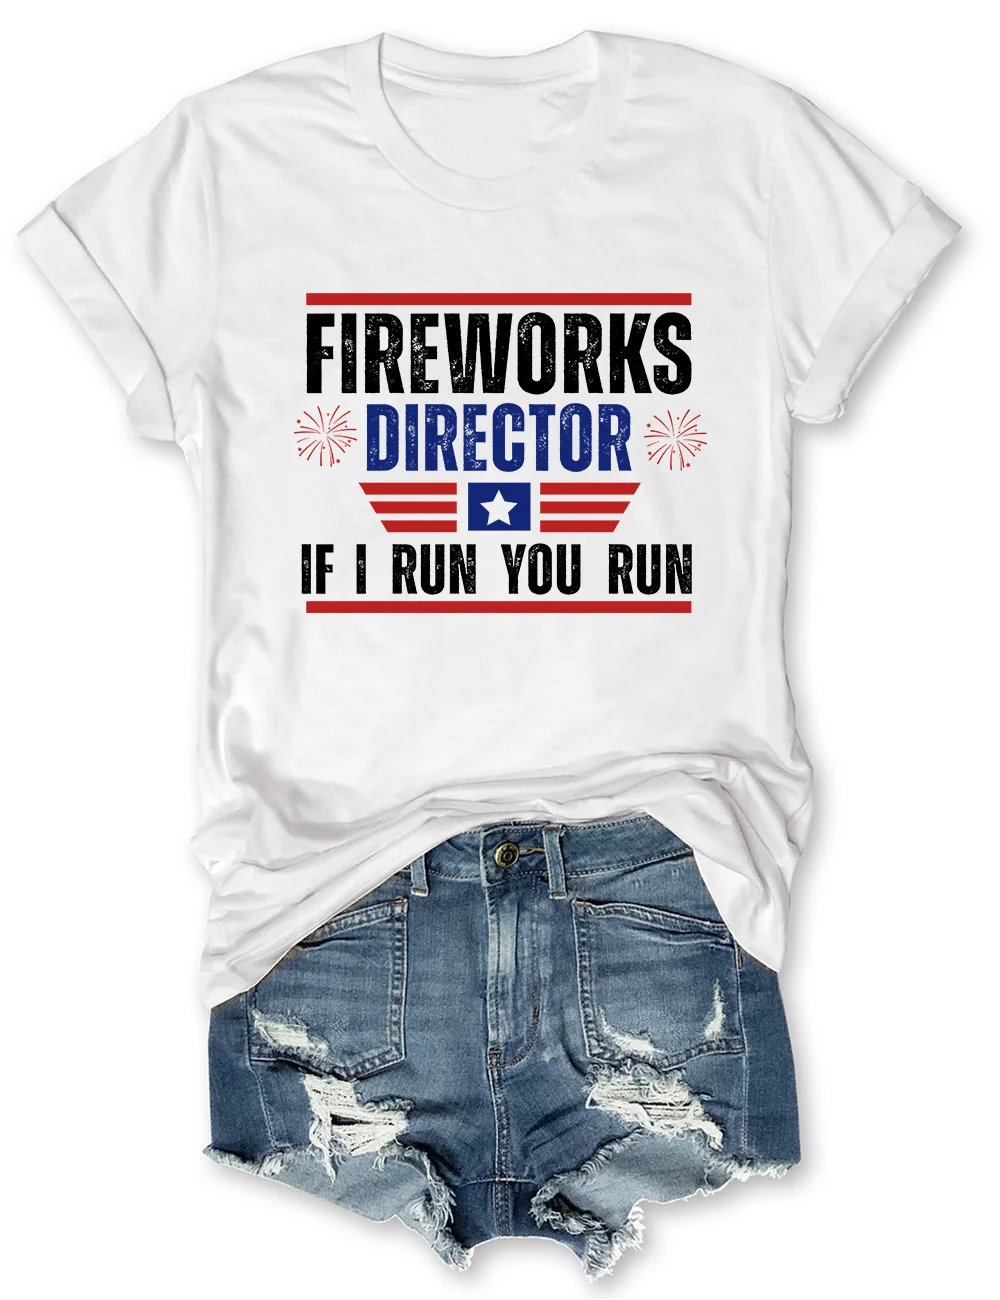 Fireworks Director I Run You Run T-Shirt